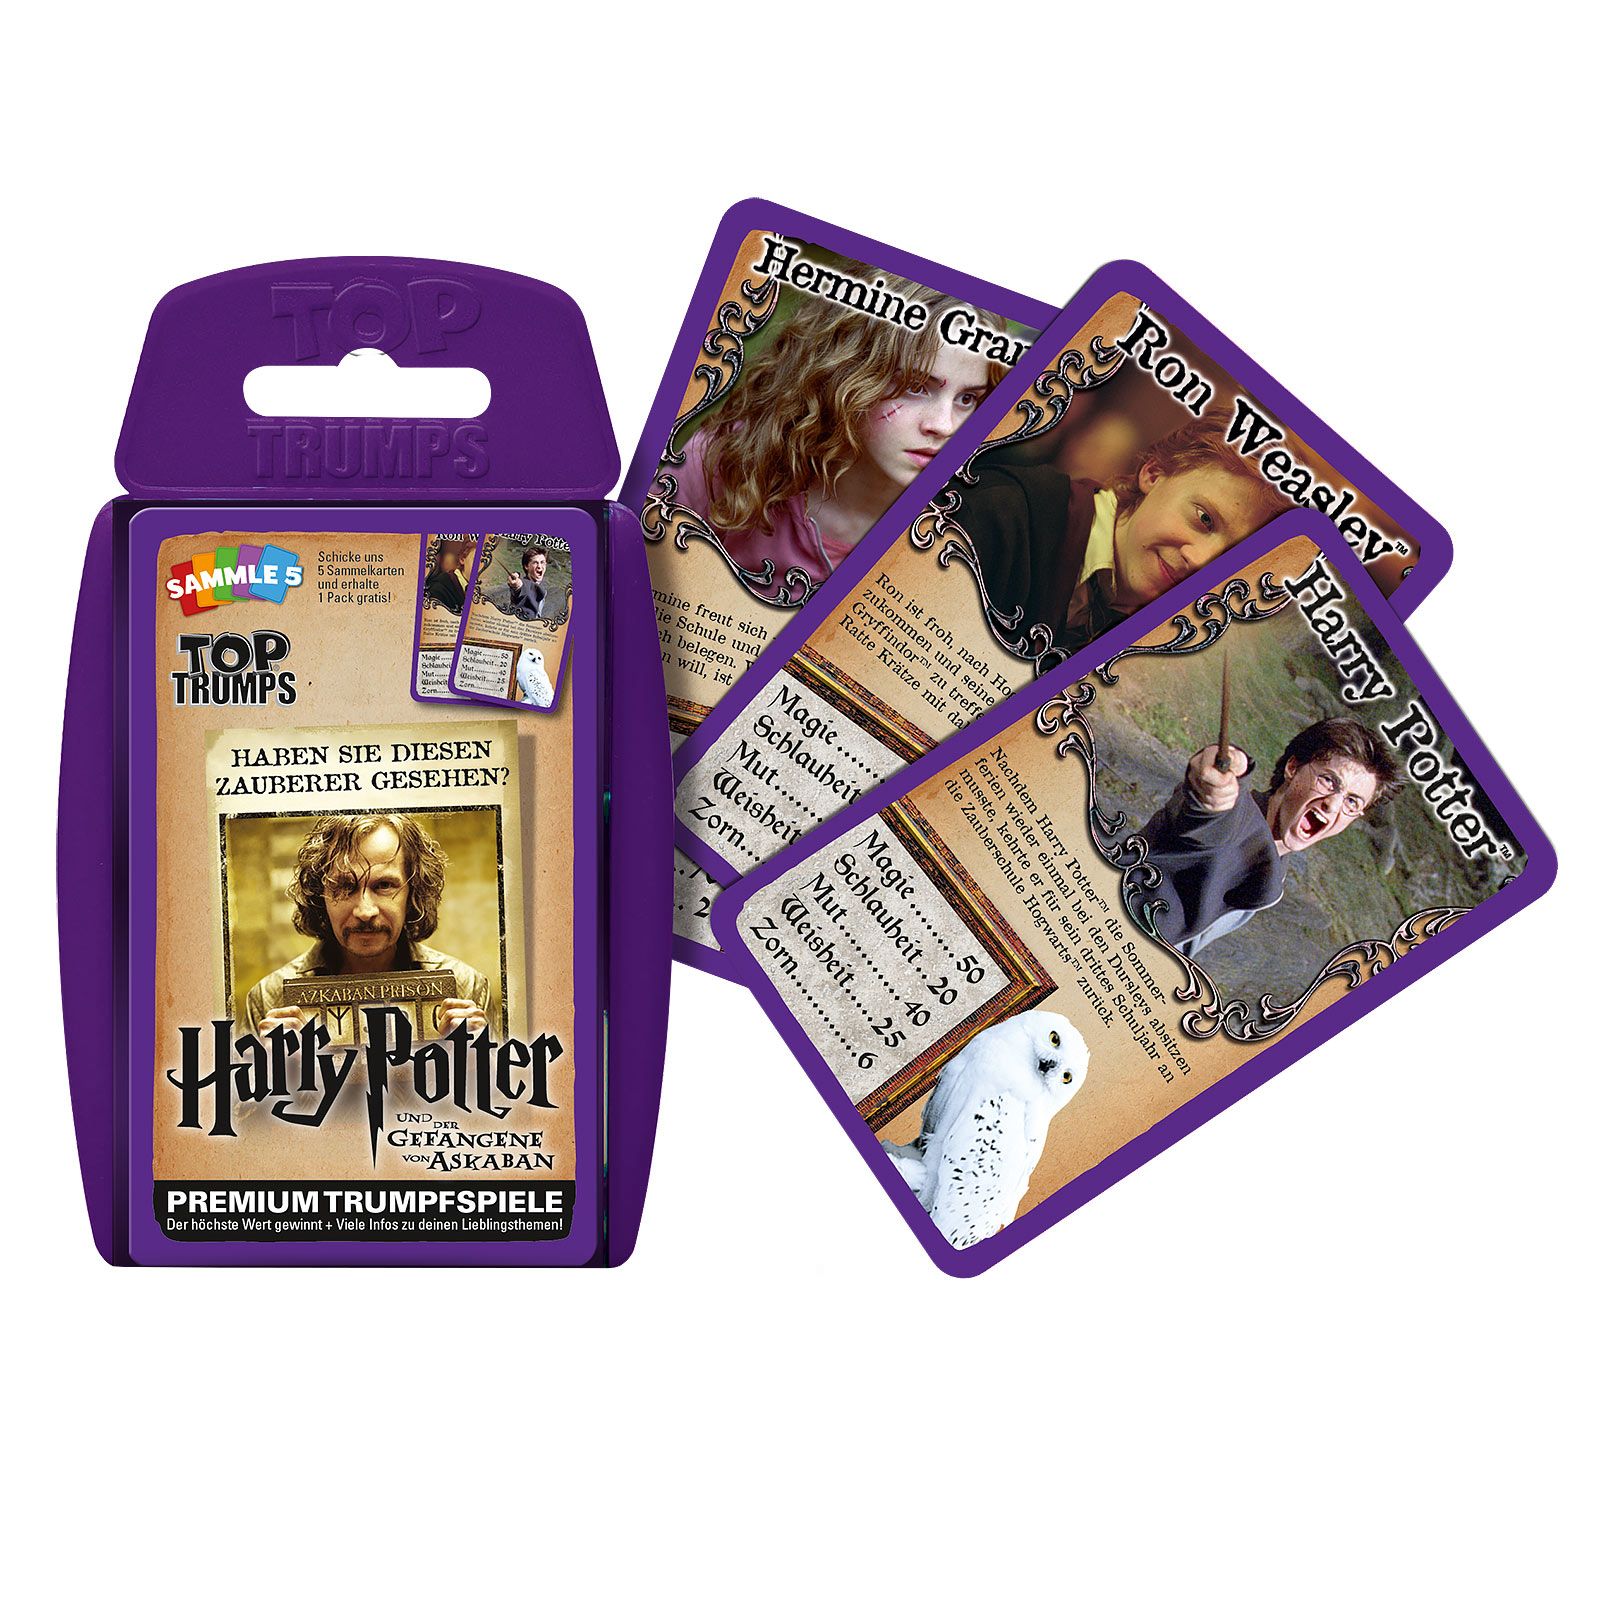 Harry Potter und der Gefangene von Askaban Top Trumps Spielkarten